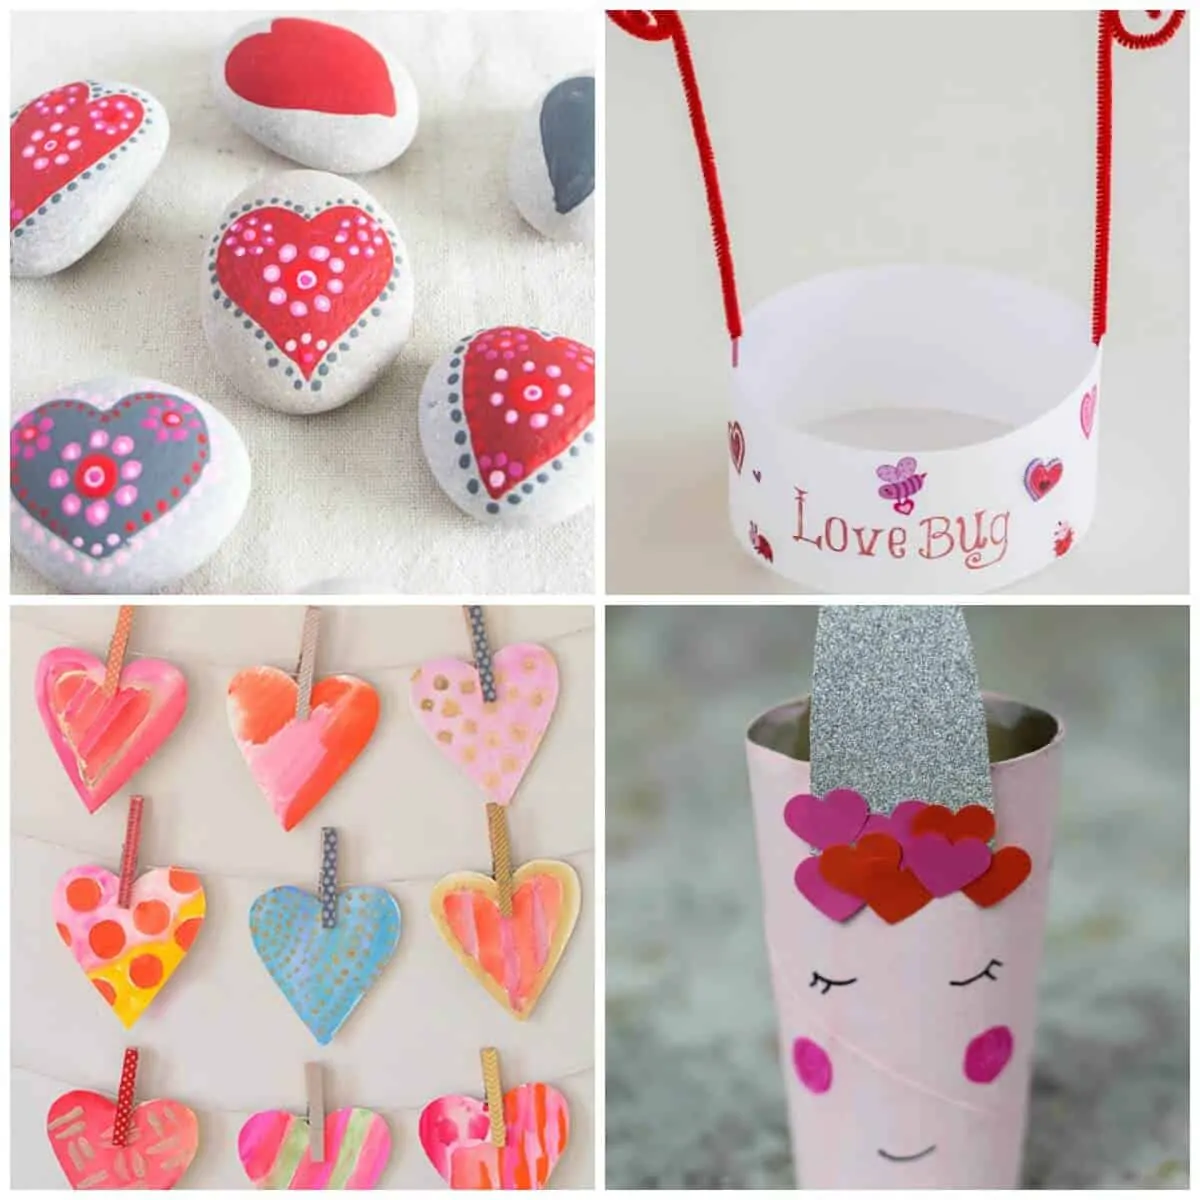 Kids Valentines Day Crafts